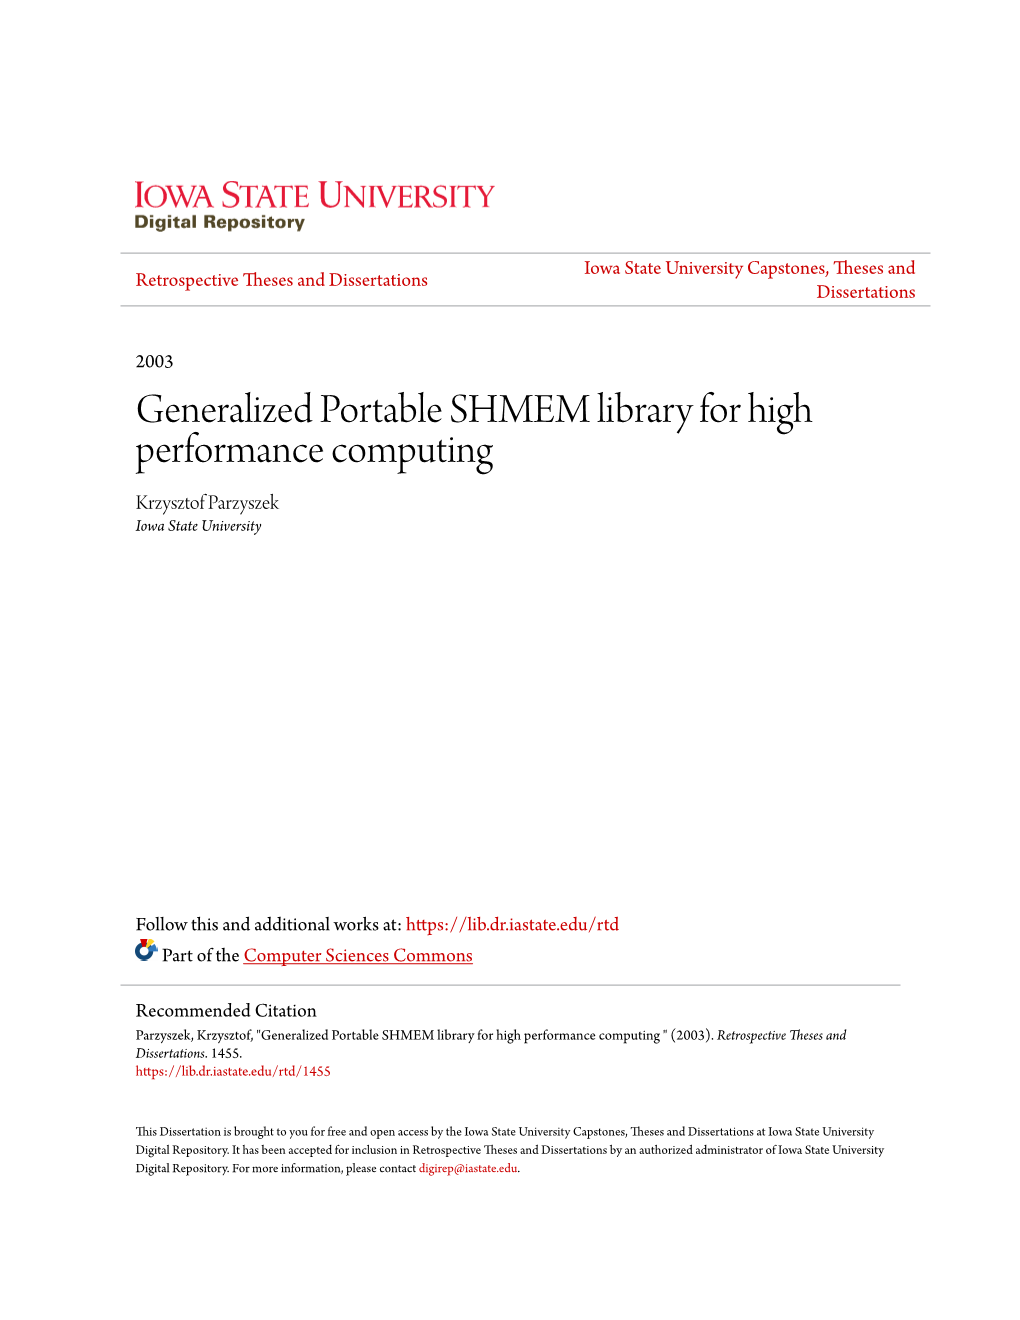 Generalized Portable SHMEM Library for High Performance Computing Krzysztof Parzyszek Iowa State University